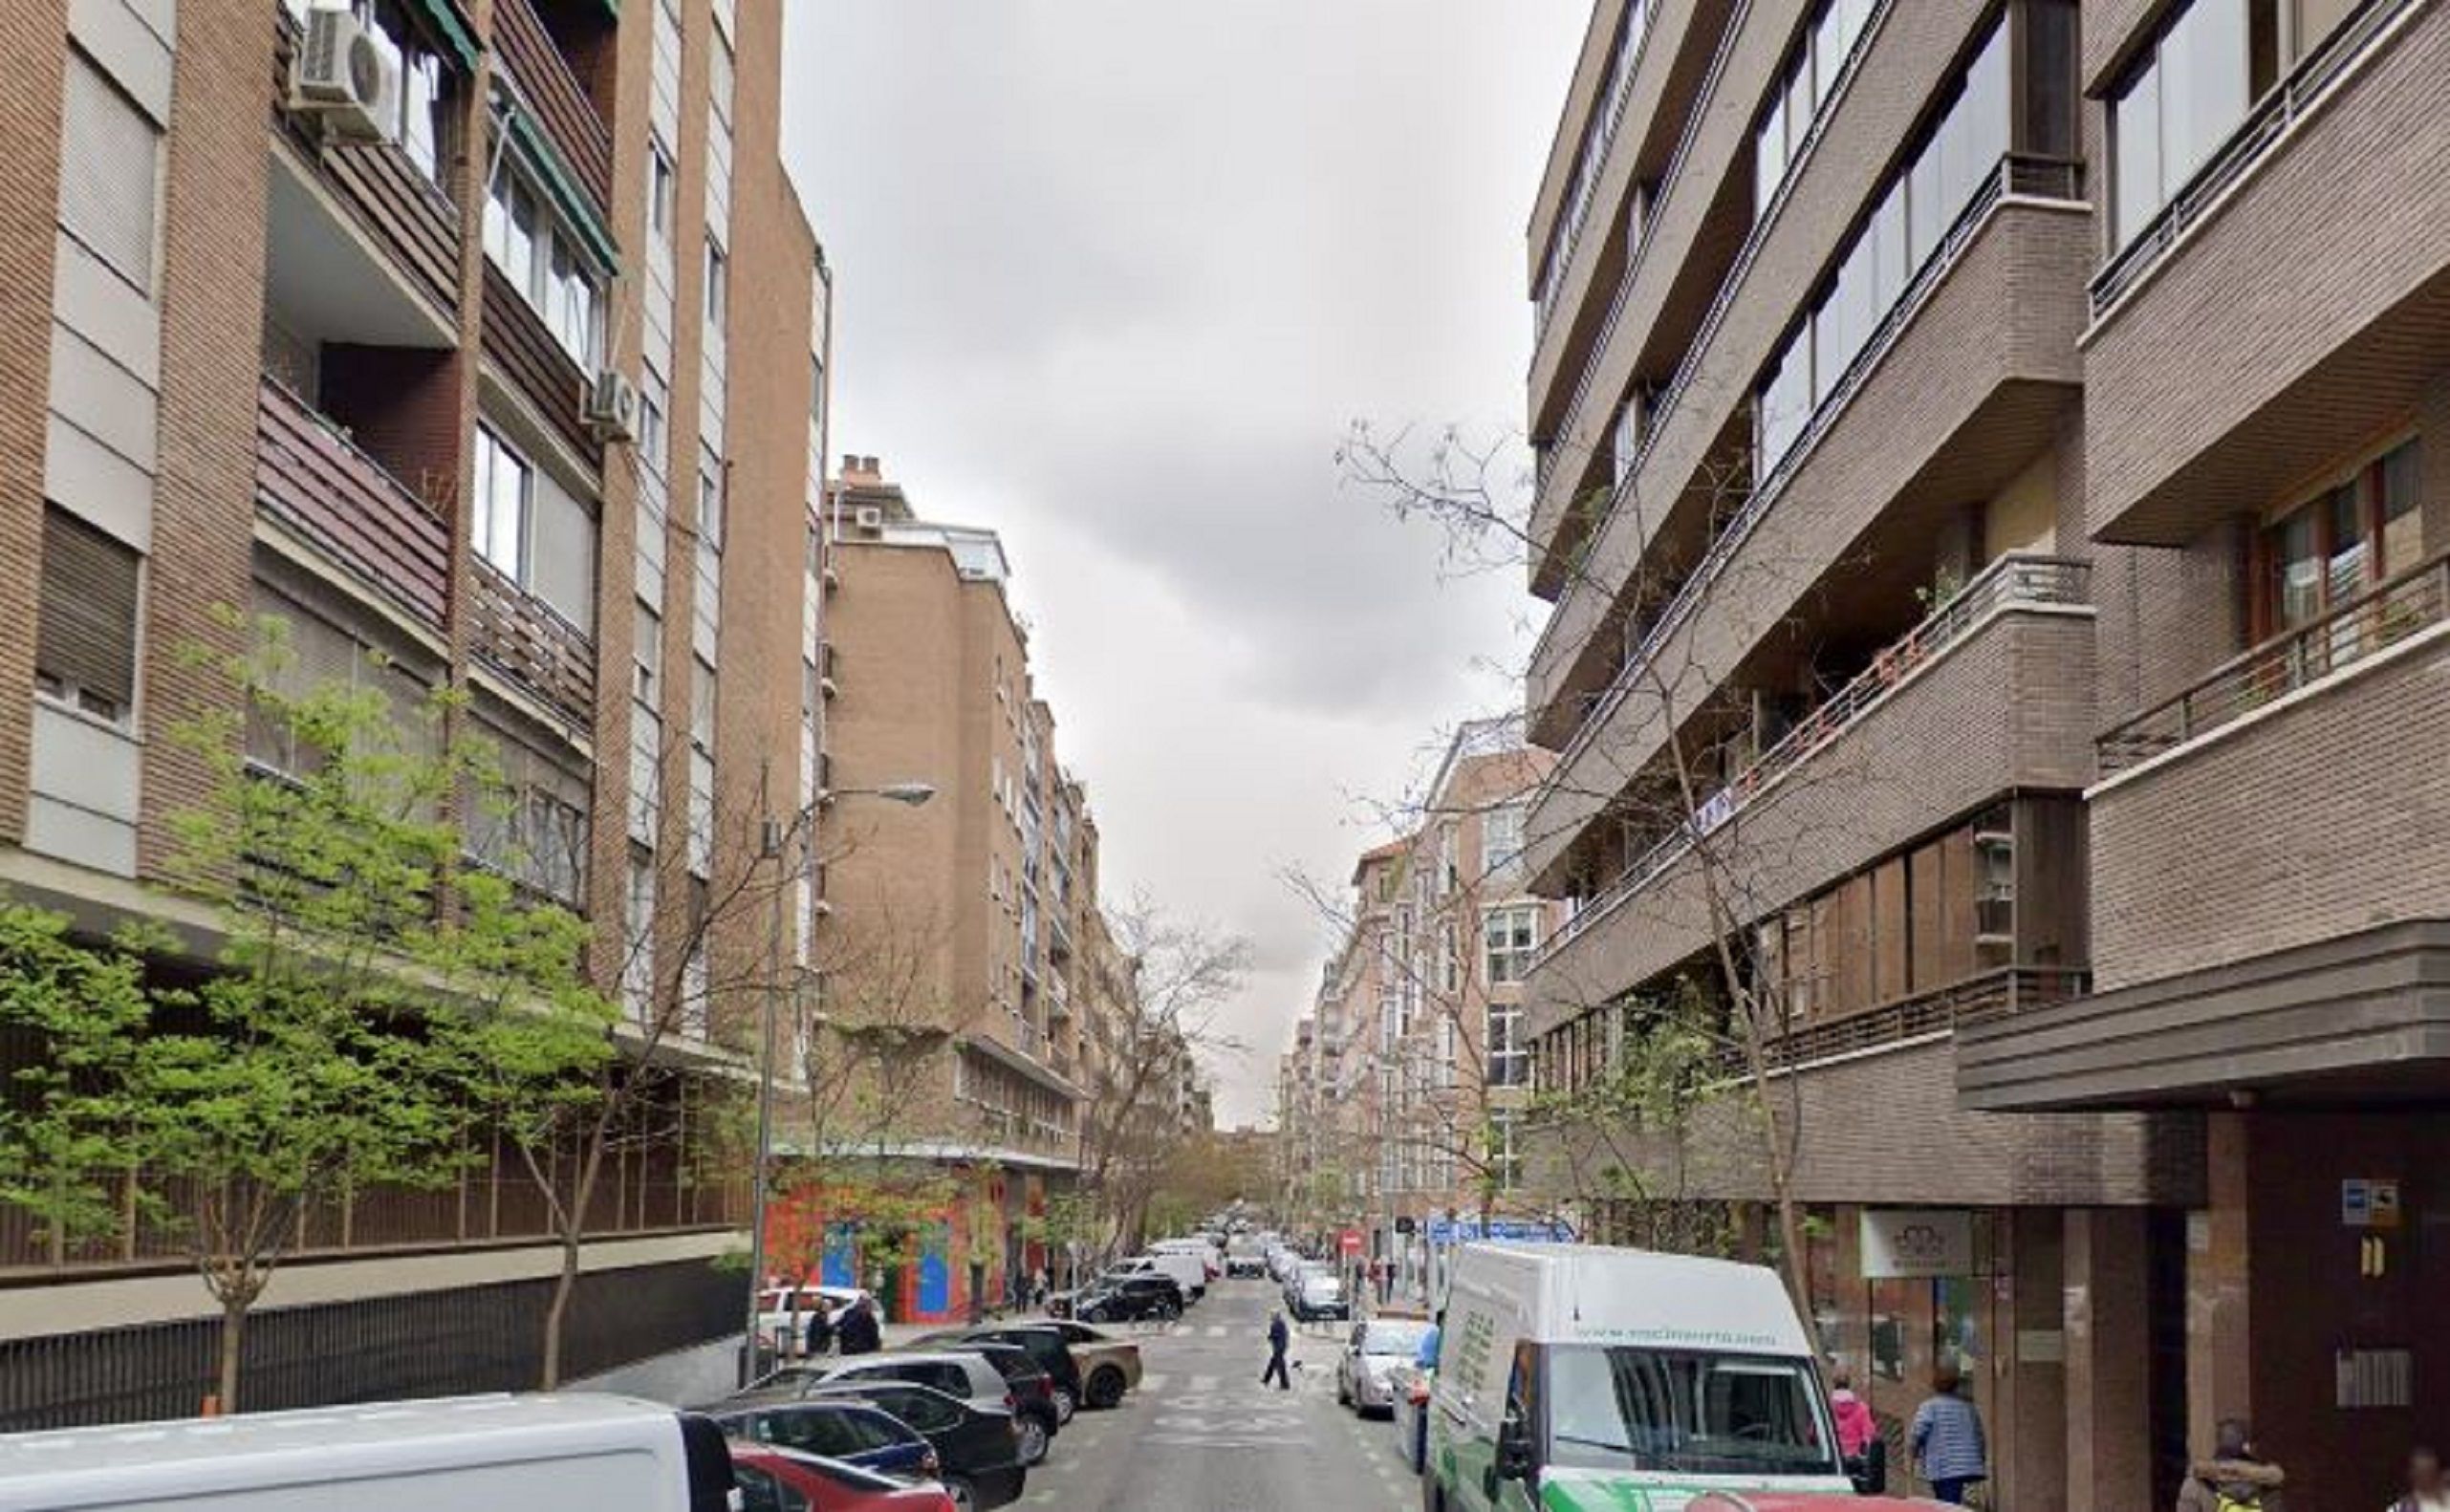 Calle Granada Madrid  Google Maps